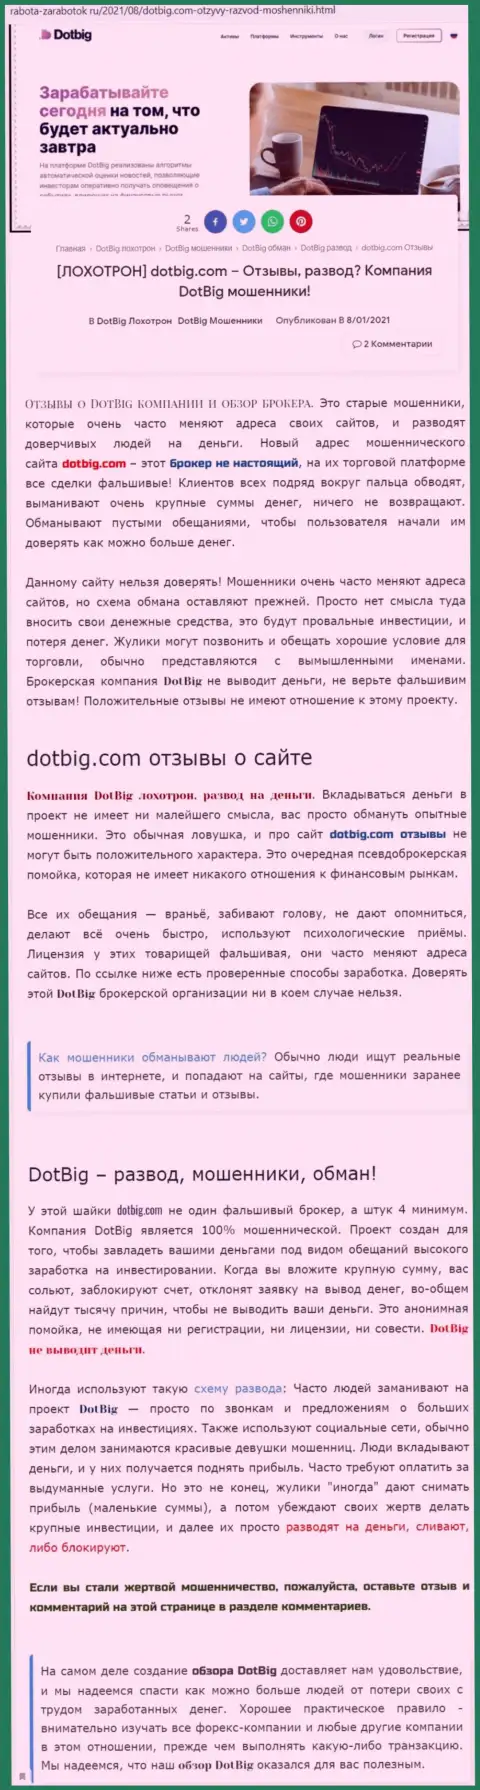 DotBig LTD вложения отдавать отказывается - это ОБМАНЩИКИ !!! (обзор компании)